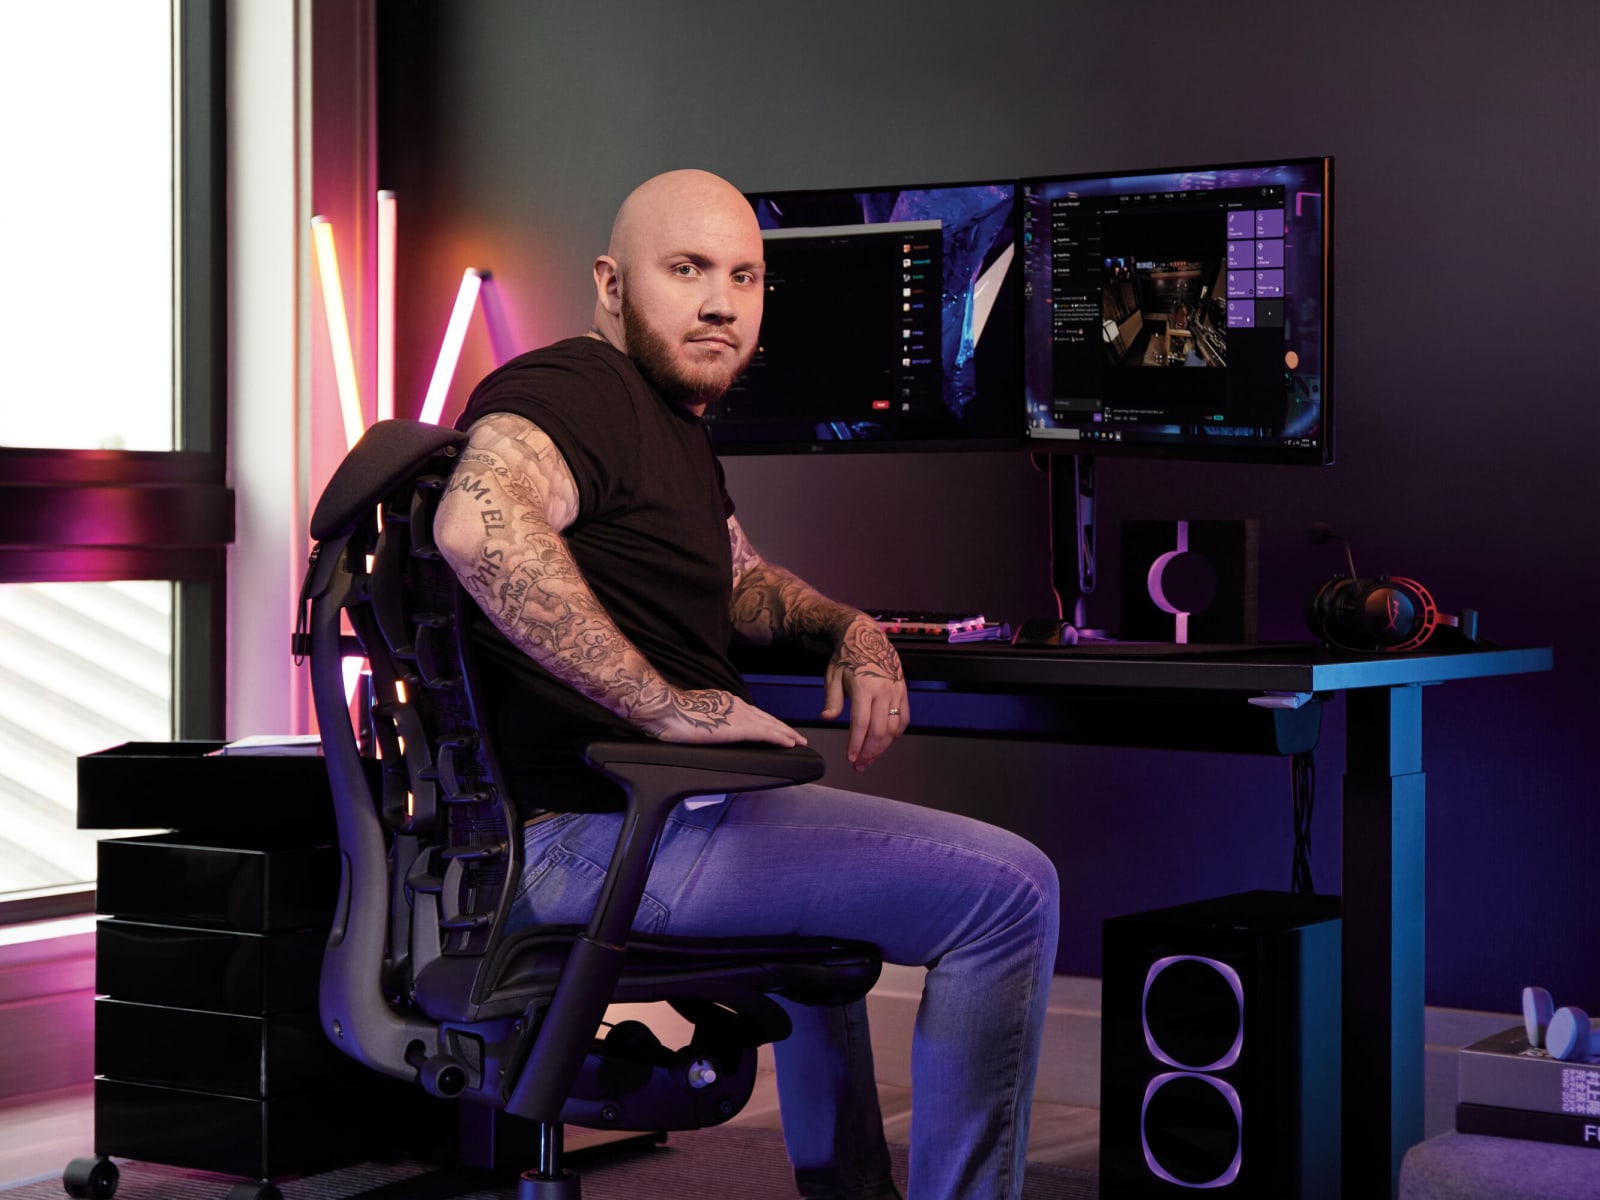 Em seu espaço de jogos, o streamer Pro Timthetatman está sentado em uma cadeira Embody Gaming, uma mesa Herman Miller com altura ajustável e com dois braços de monitores.